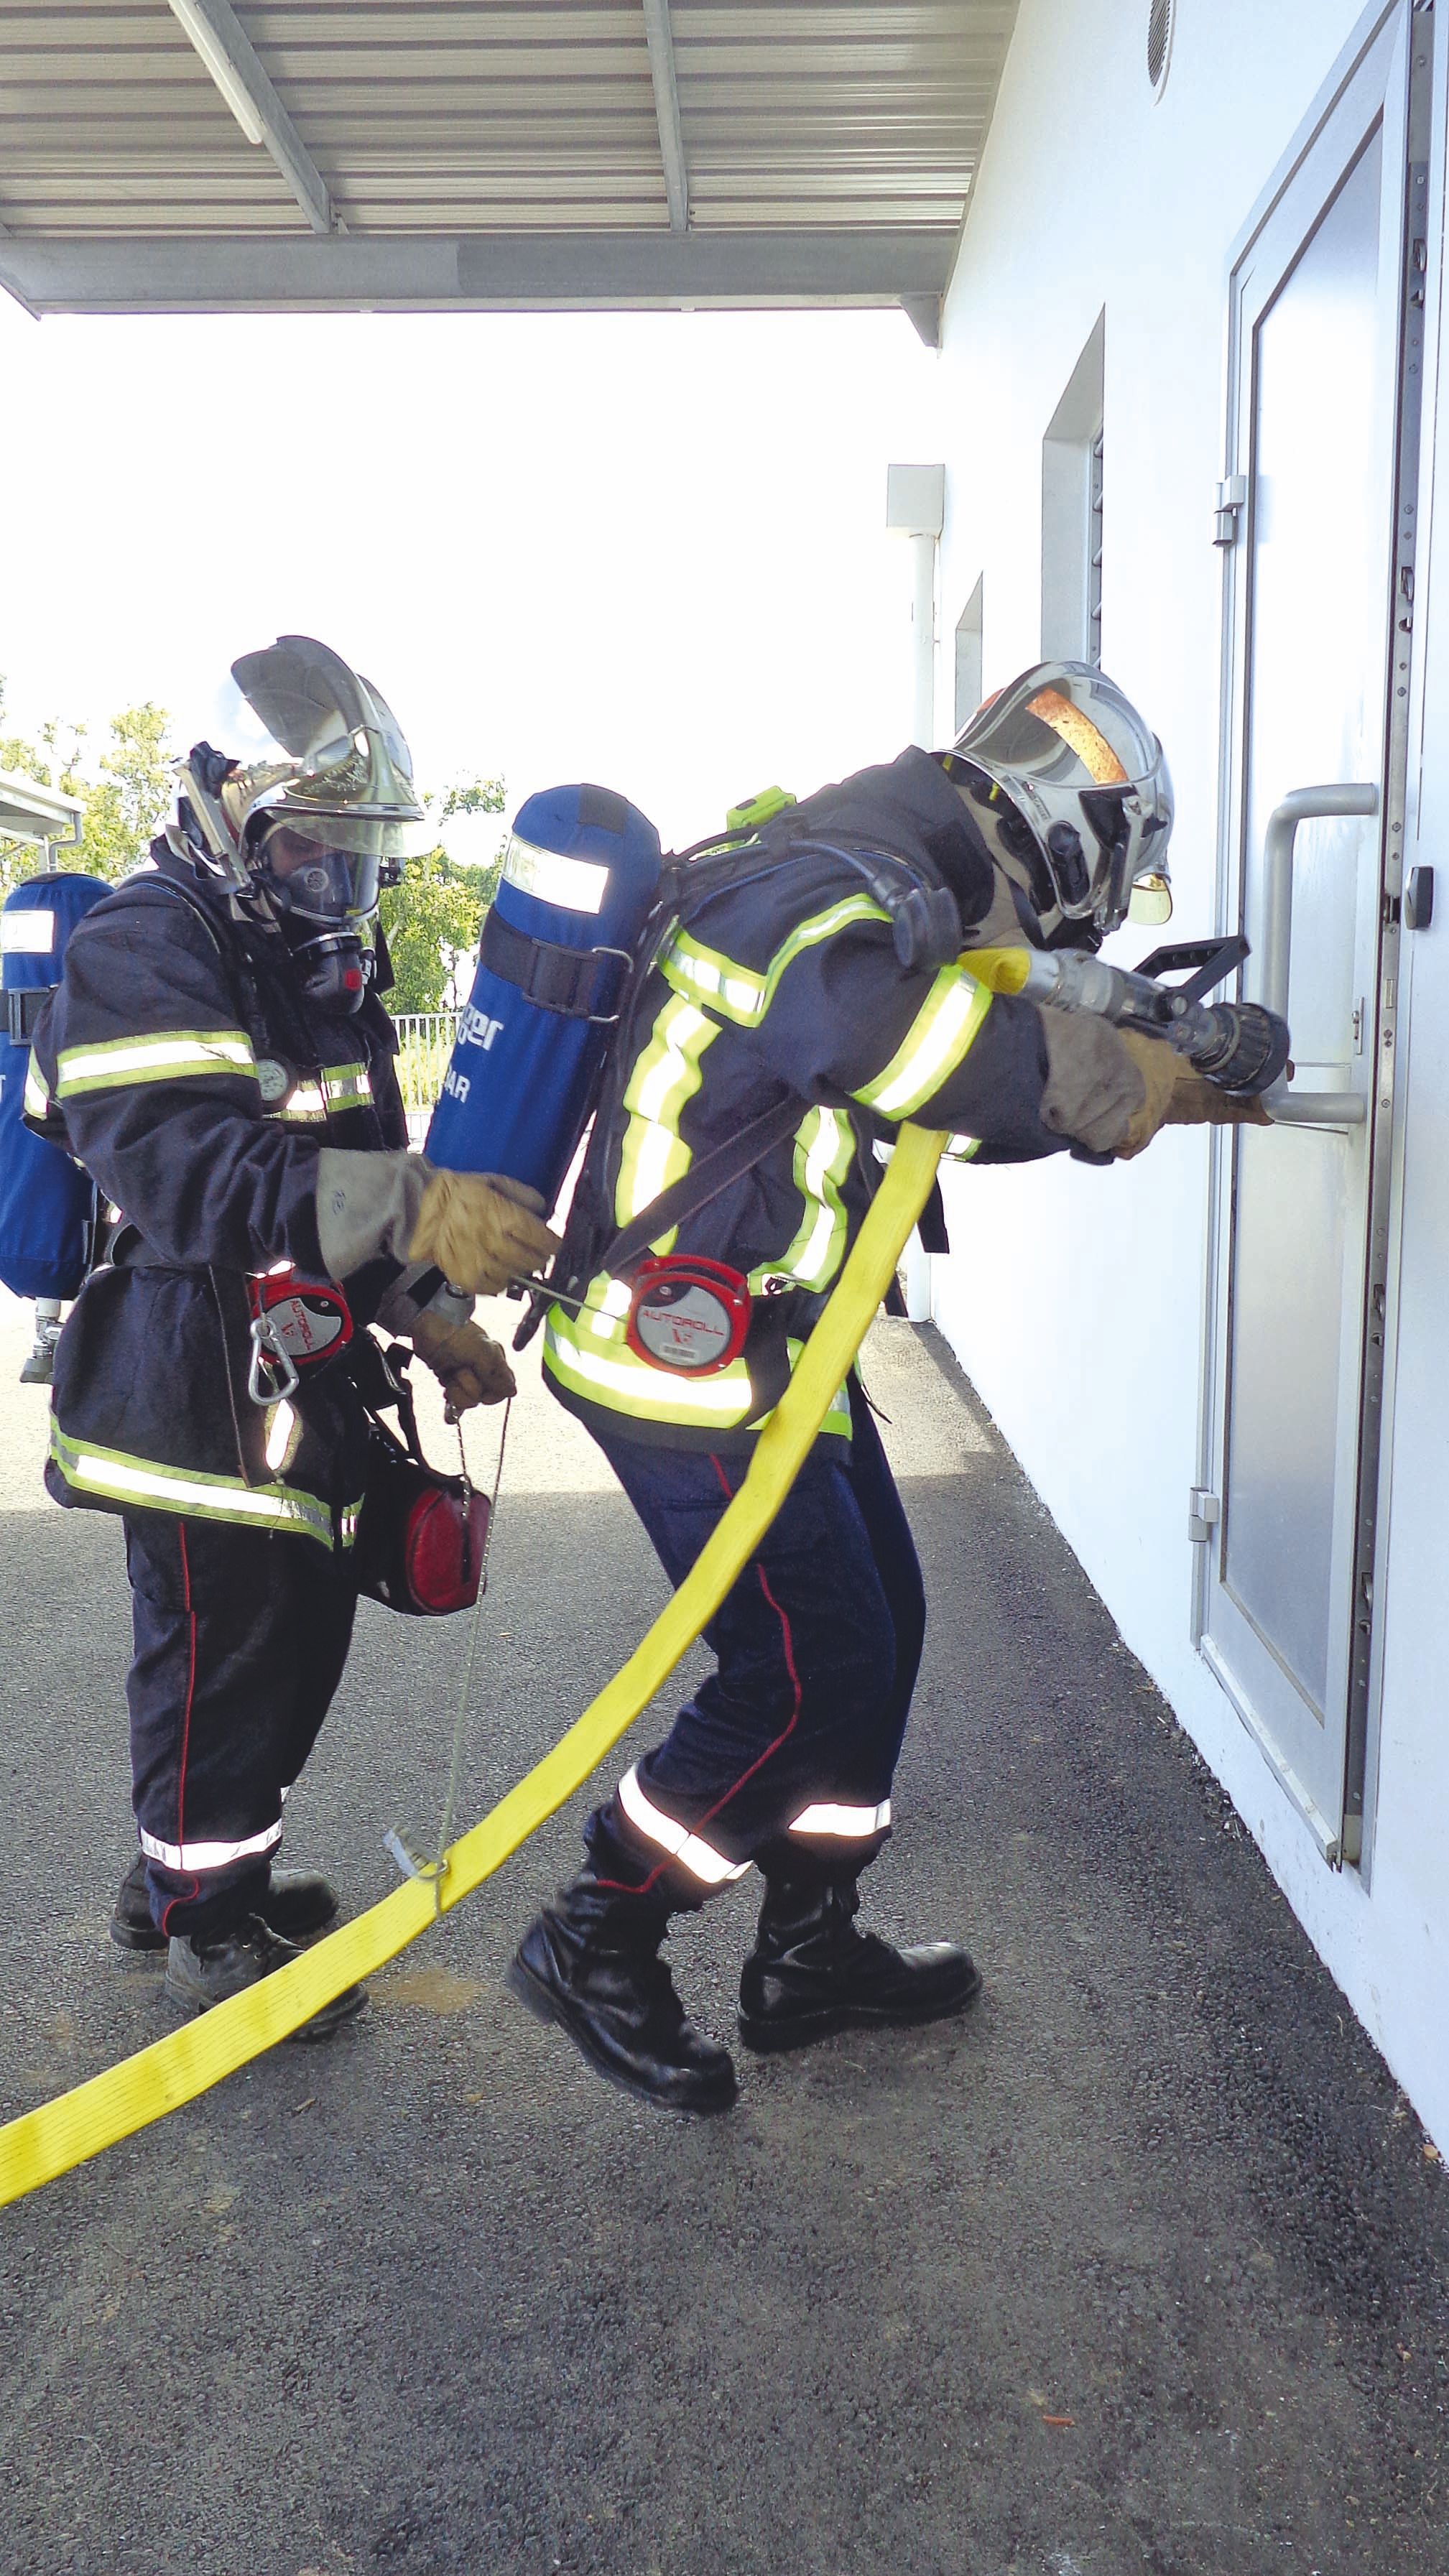 Le binôme de reconnaissance était équipé de masques à oxygène pour pénétrer dans l’agence à l’endroit où le feu semble s’être déclaré. Les pompiers vont ensuite partir à la recherche de la personne manquante.